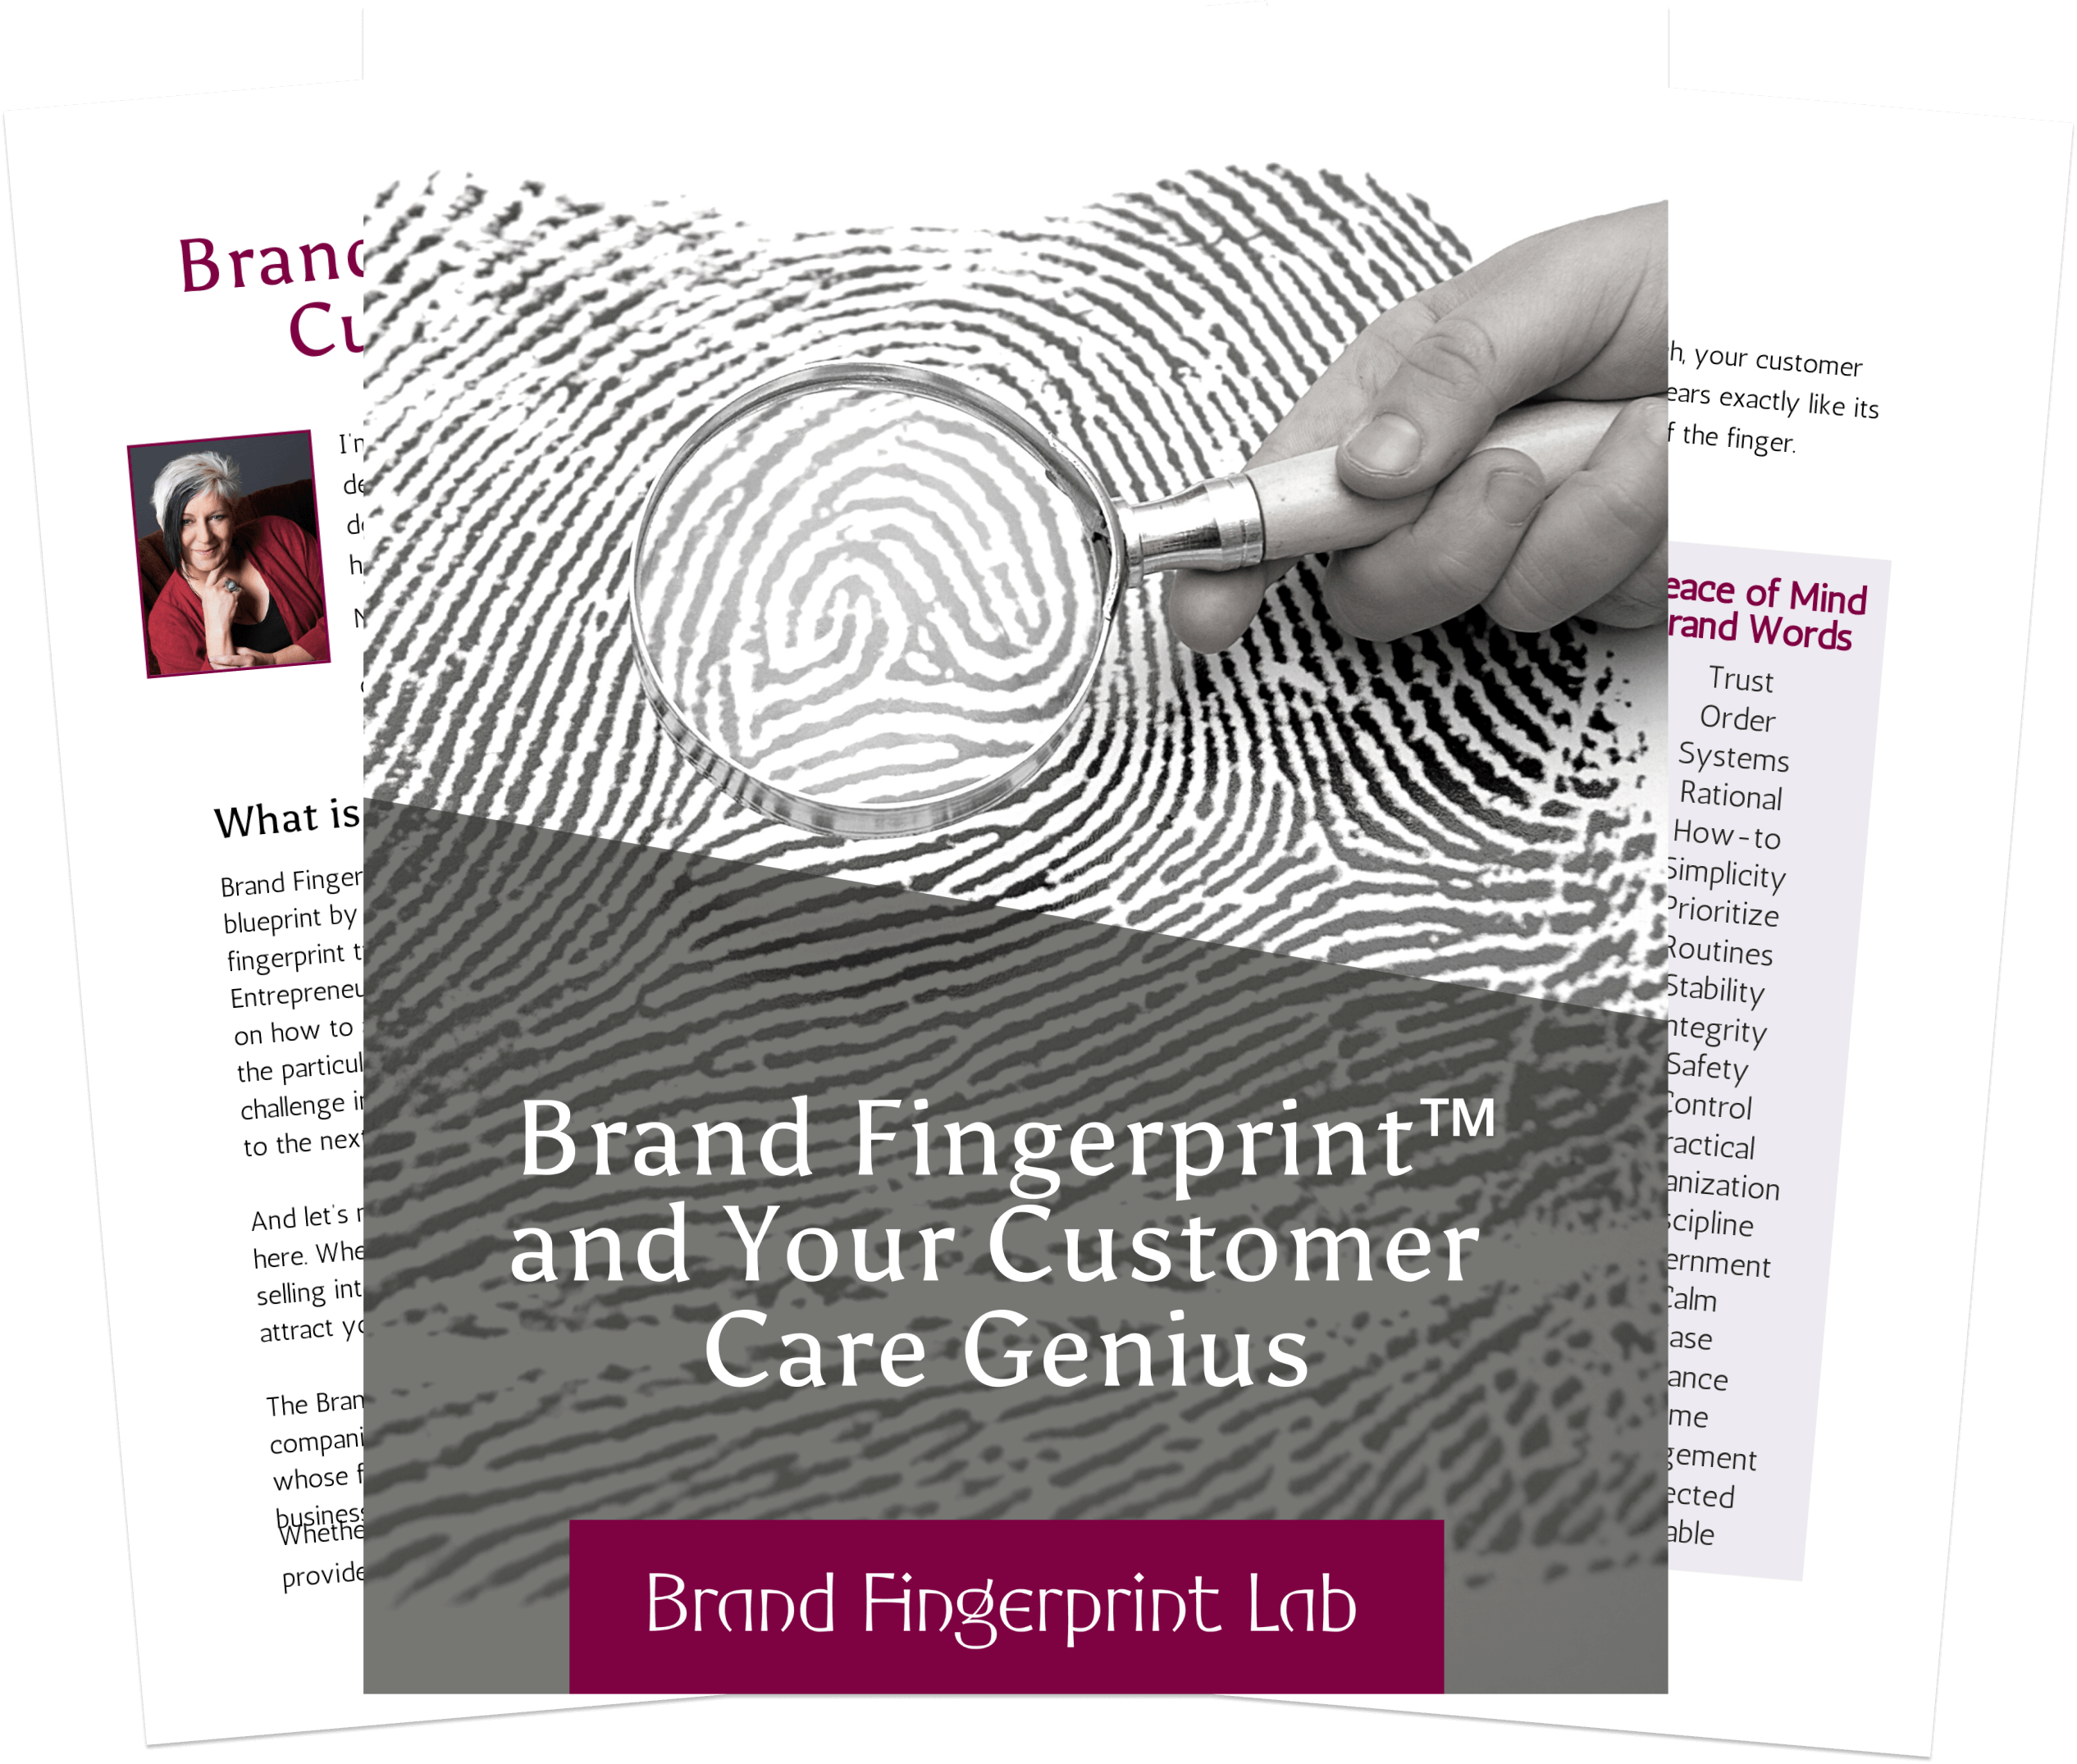 brand fingerprint lab customer care guide